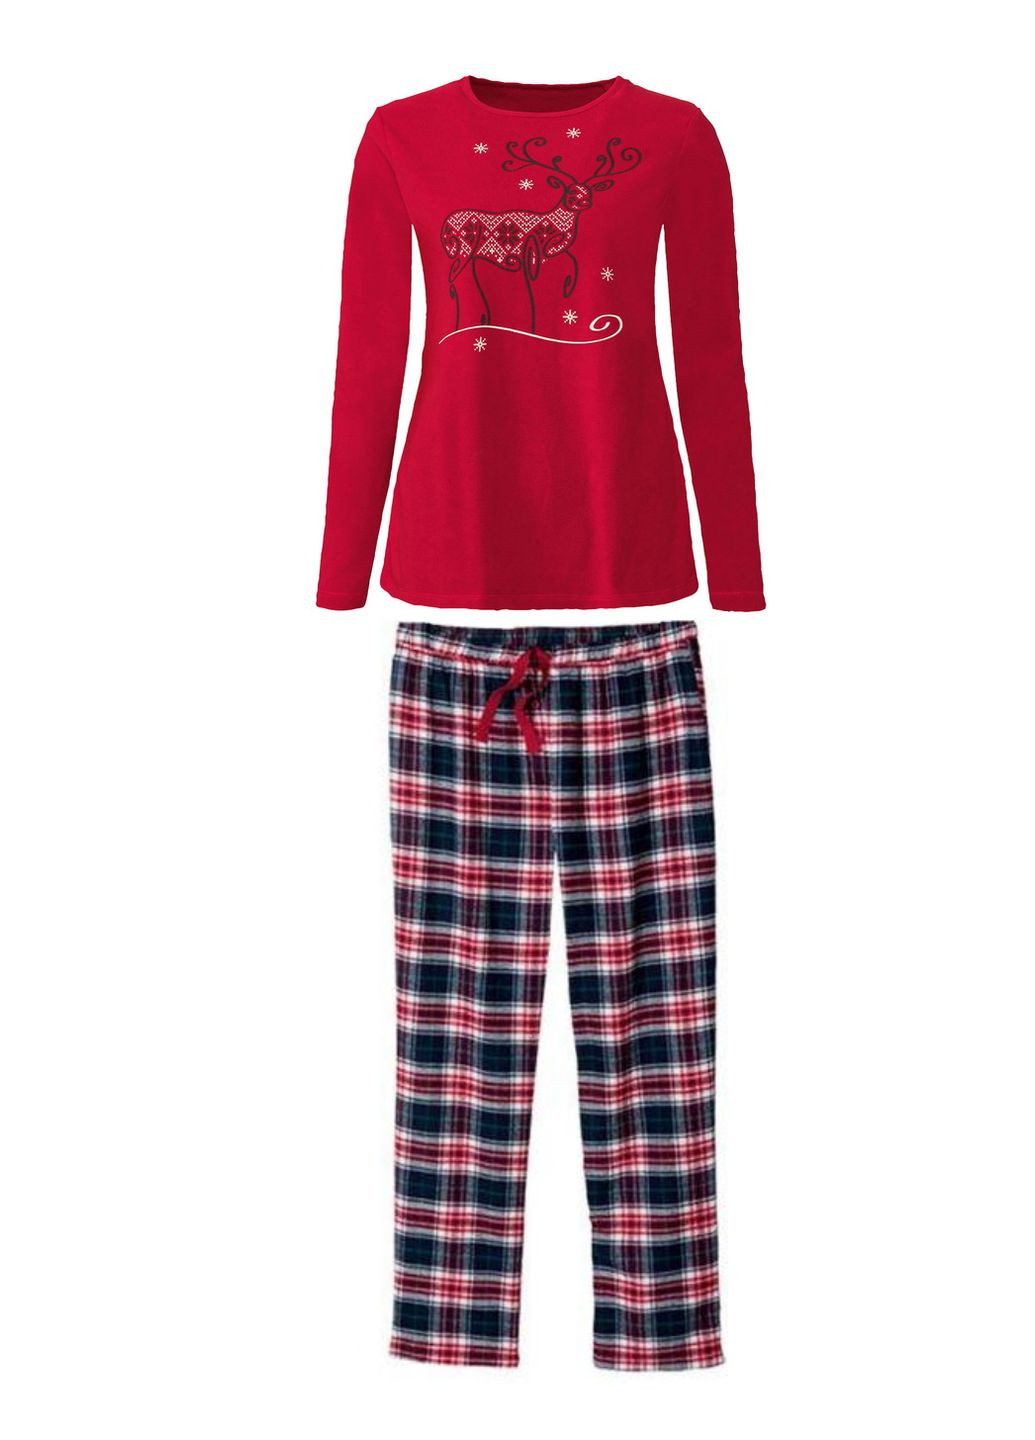 Червона всесезон піжама (лонгслів і штани) для жінки 421877-1 червоний Esmara